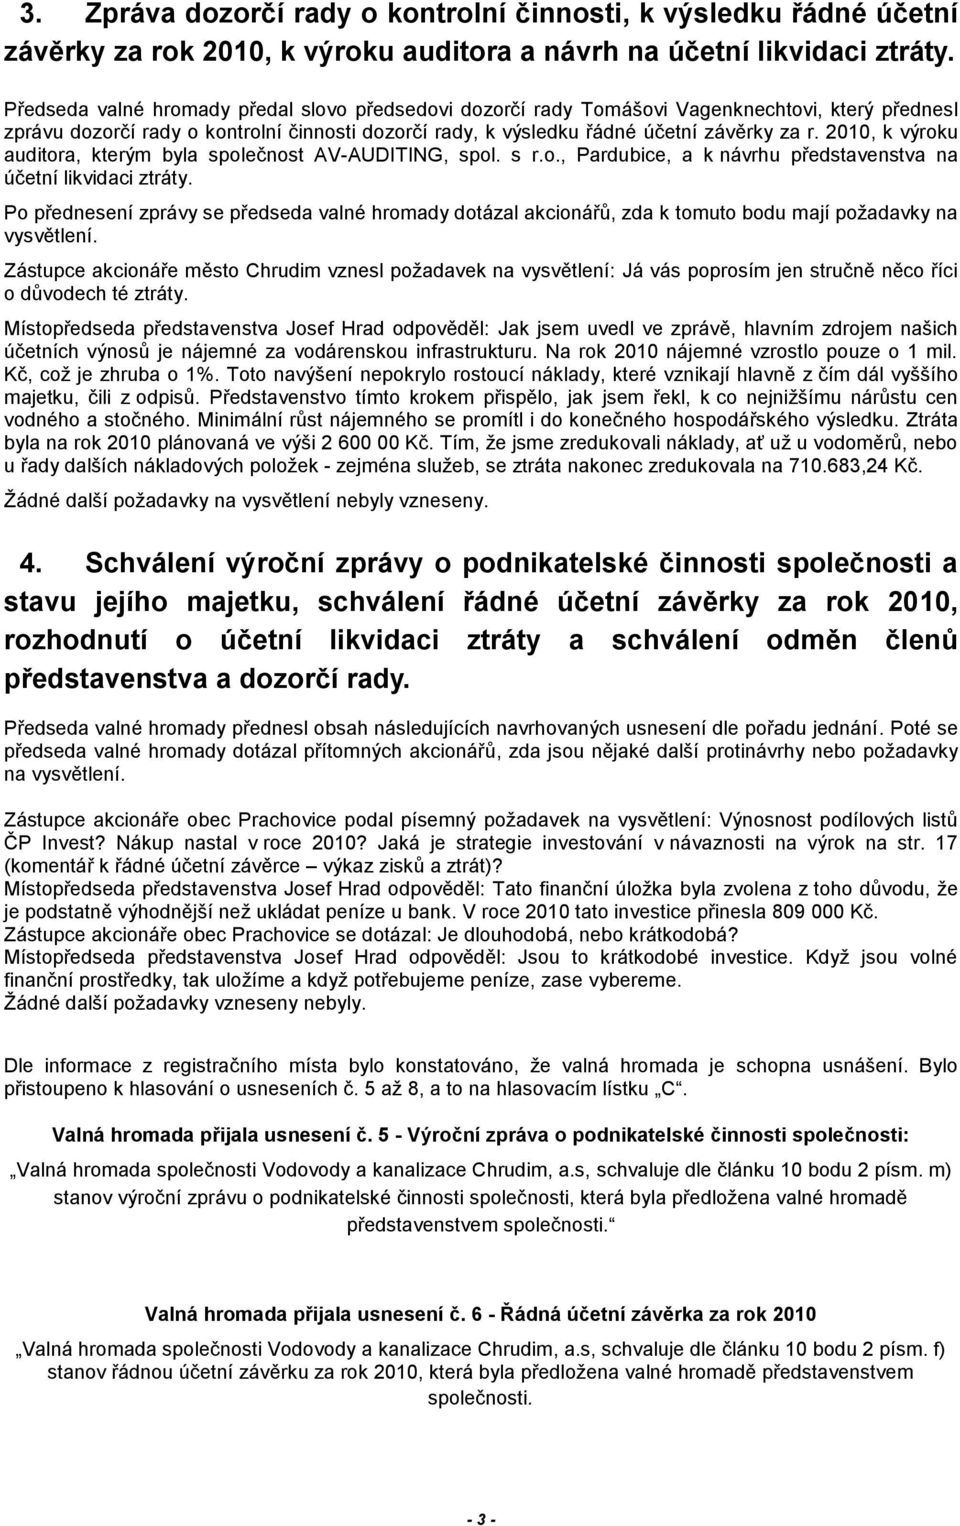 2010, k výroku auditora, kterým byla společnost AV-AUDITING, spol. s r.o., Pardubice, a k návrhu představenstva na účetní likvidaci ztráty.